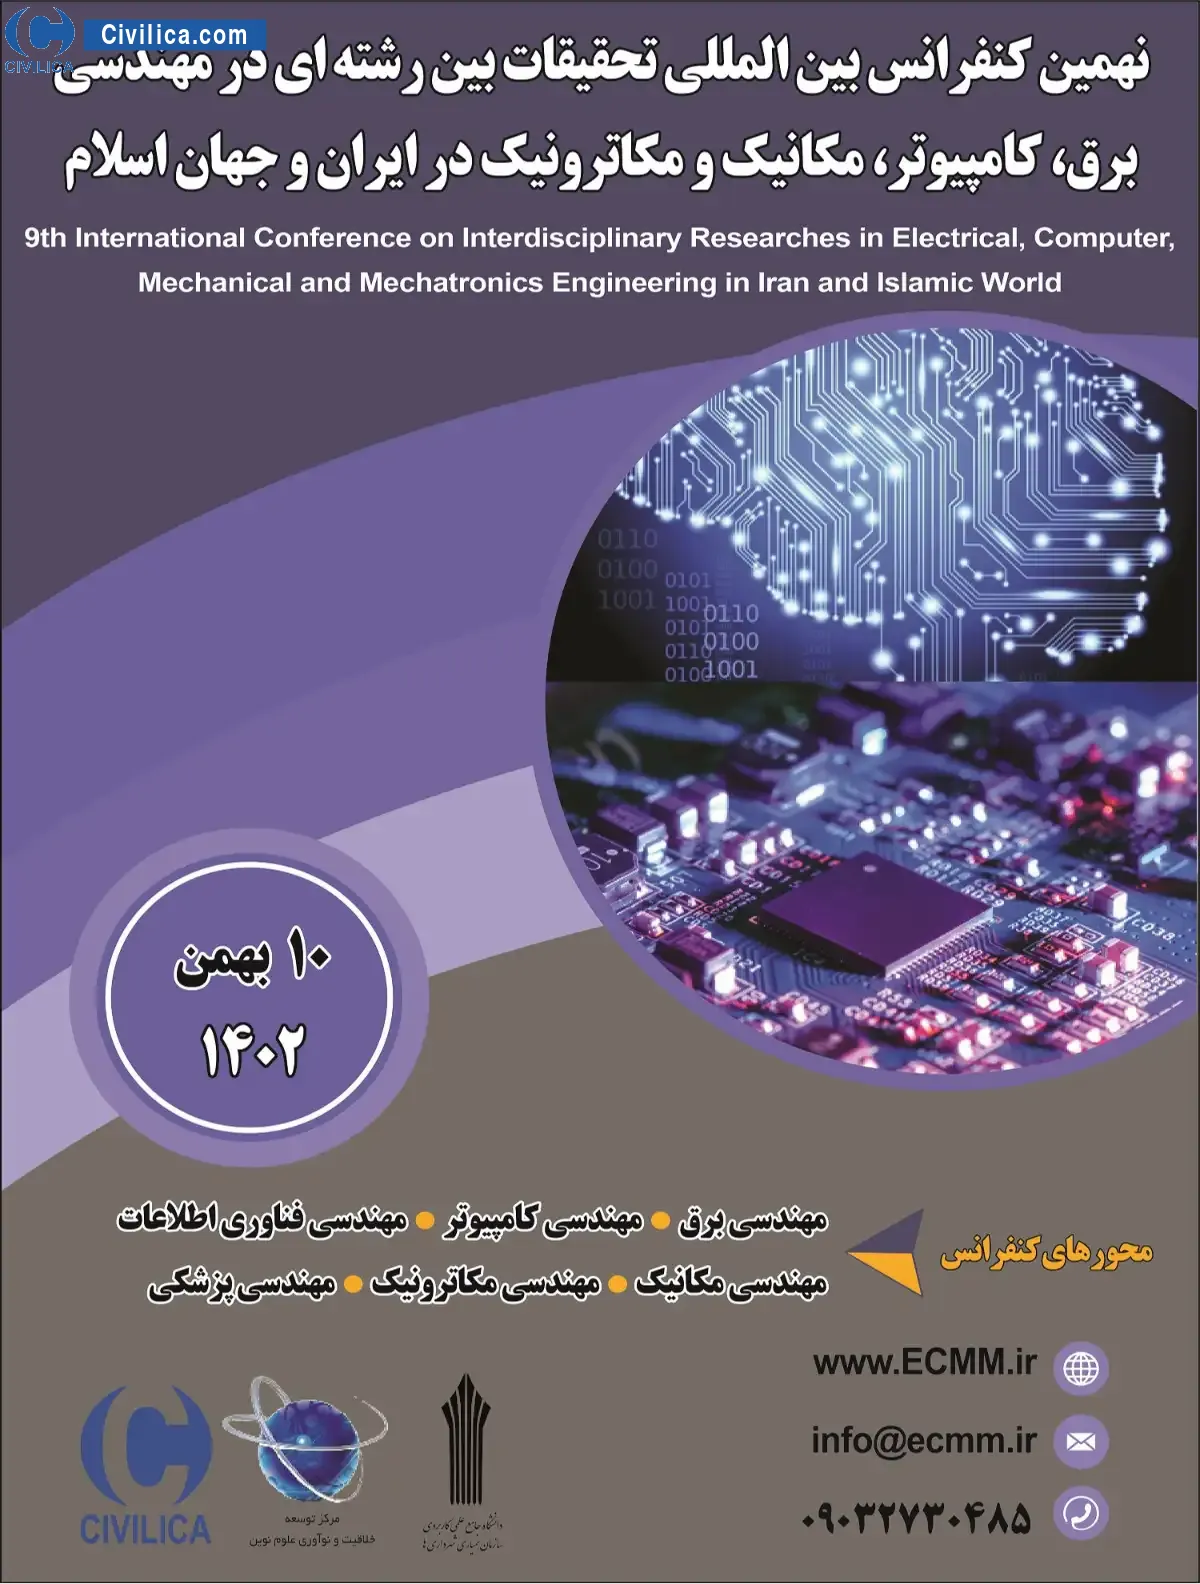 نهمین کنفرانس بین المللی تحقیقات بین رشته ای در مهندسی برق، کامپیوتر، مکانیک و مکاترونیک در ایران و جهان اسلام